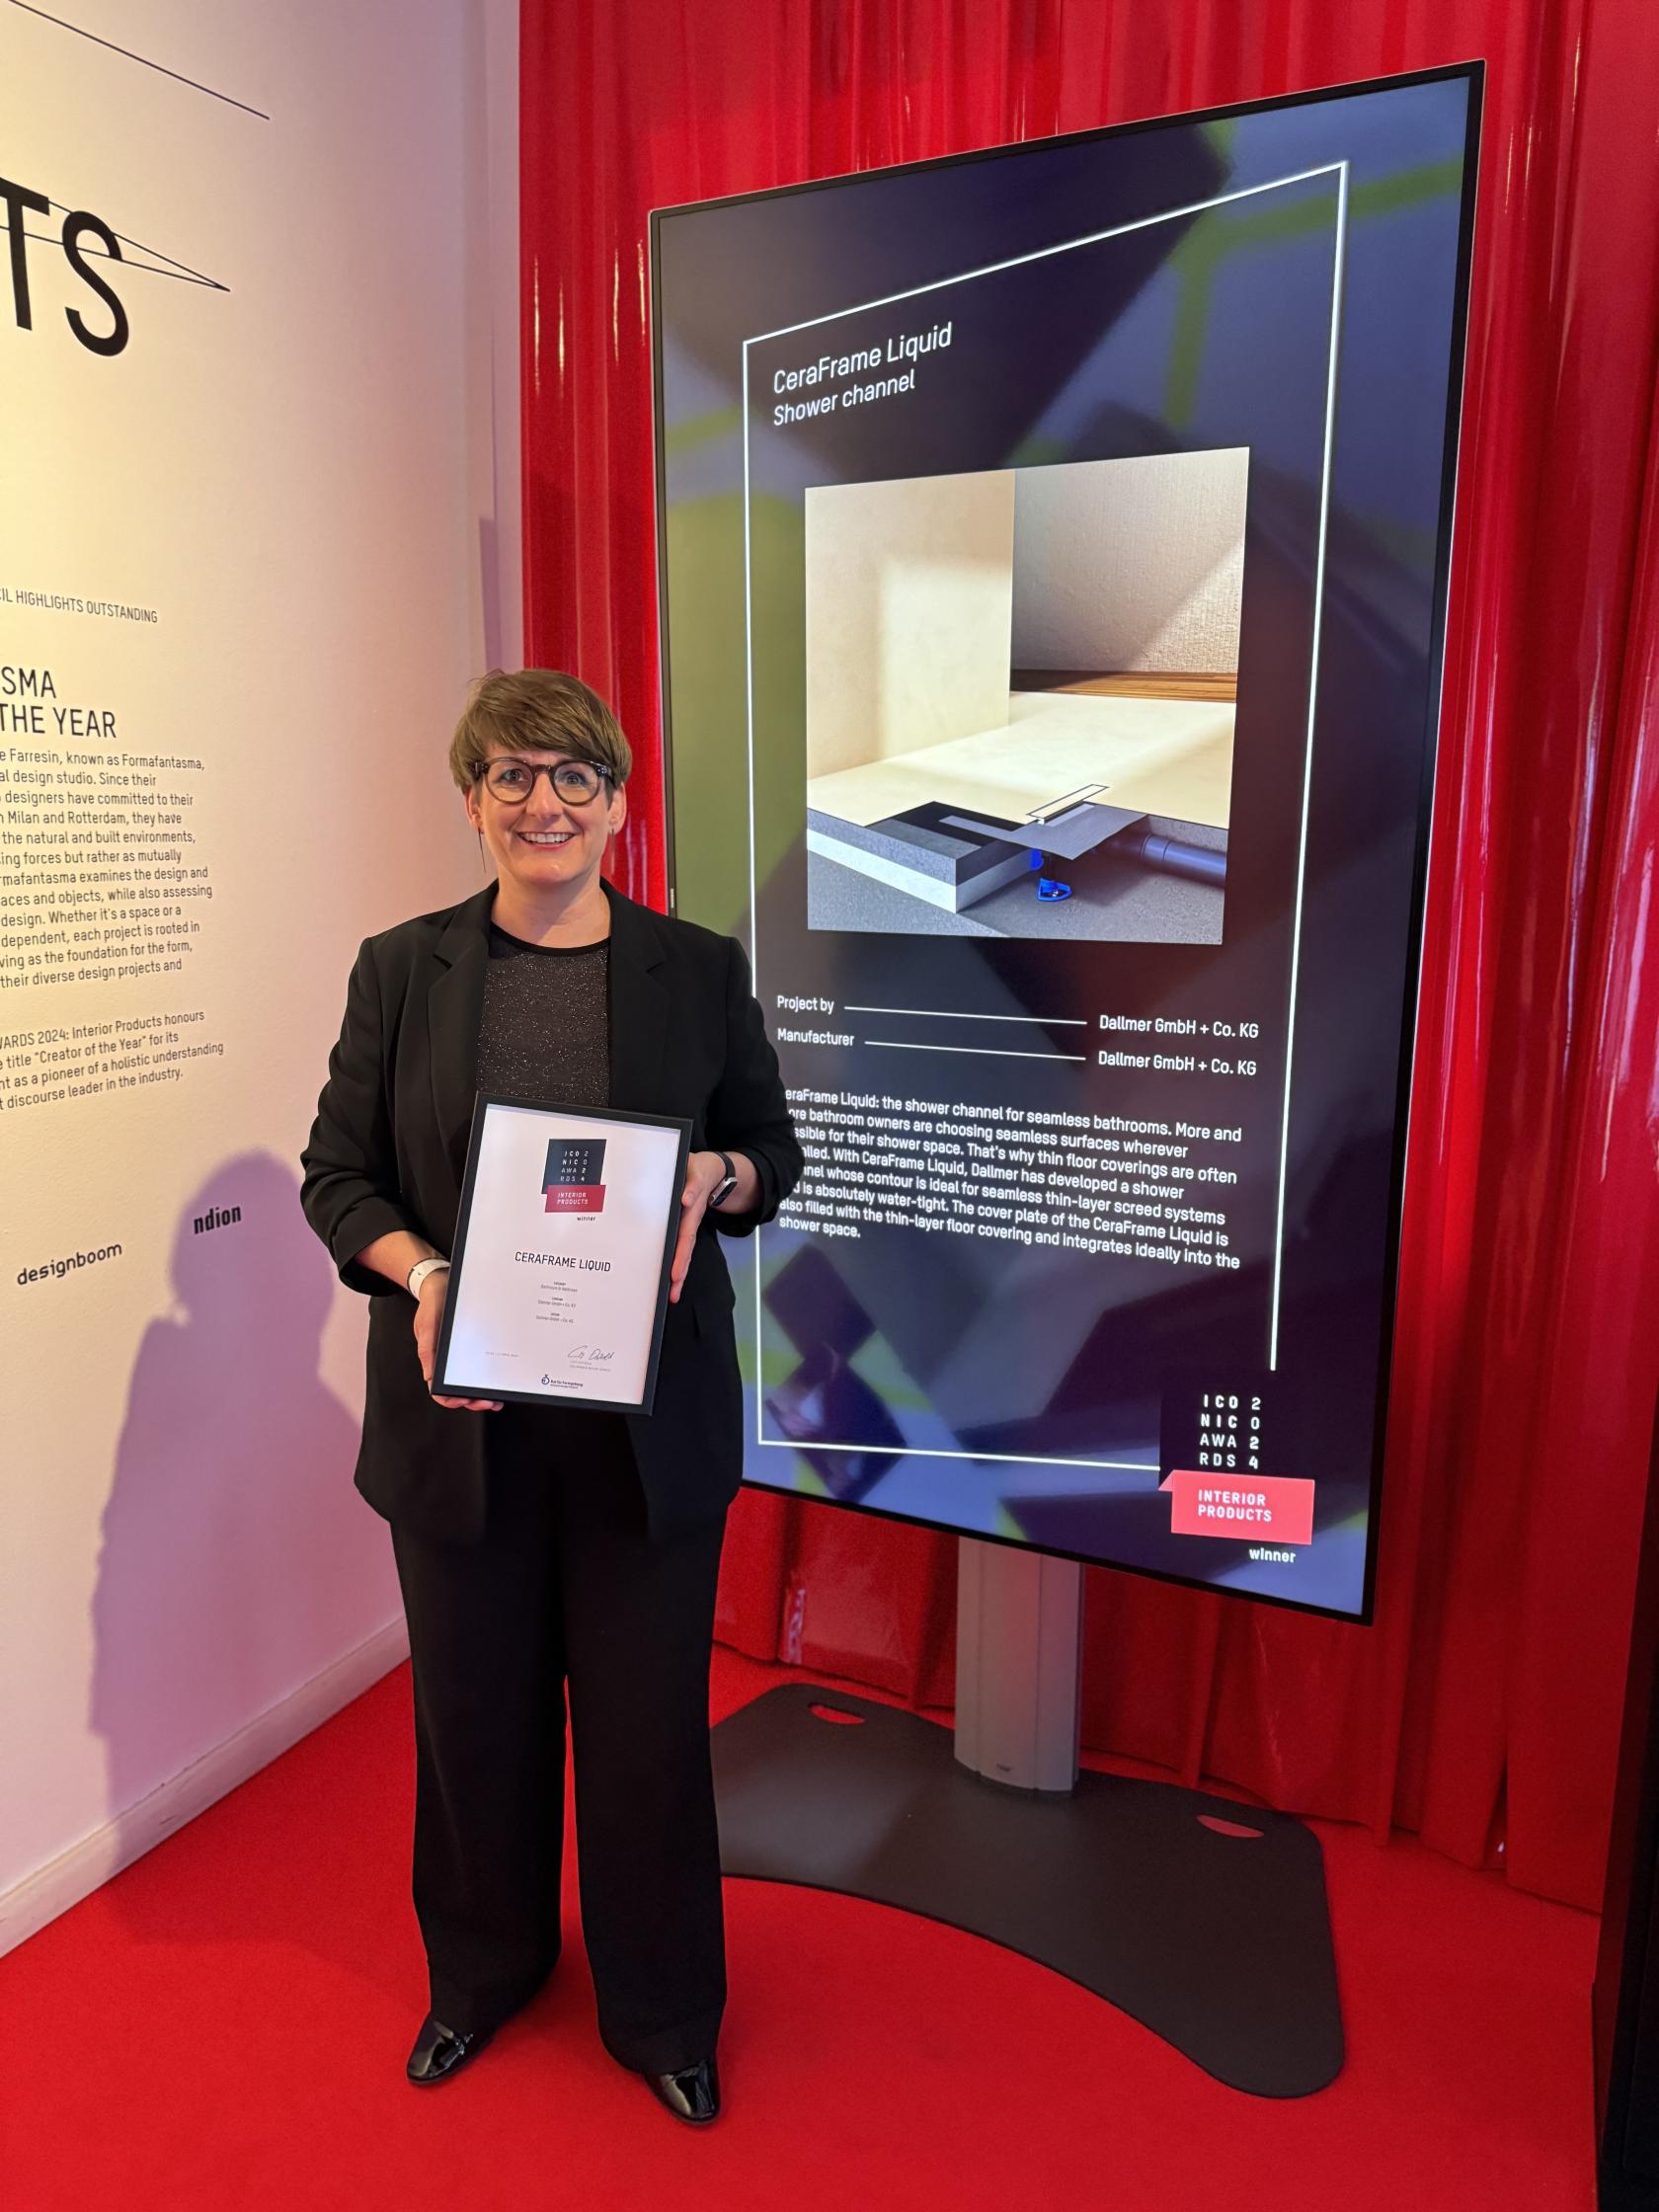 Geschäftsführerin Yvonne Dallmer auf der feierlichen Preisverleihung der „Iconic Awards: Interior Products“ in Mailand. Die Duschrinne CeraFrame Liquid erhielt die Auszeichnung "Winner".